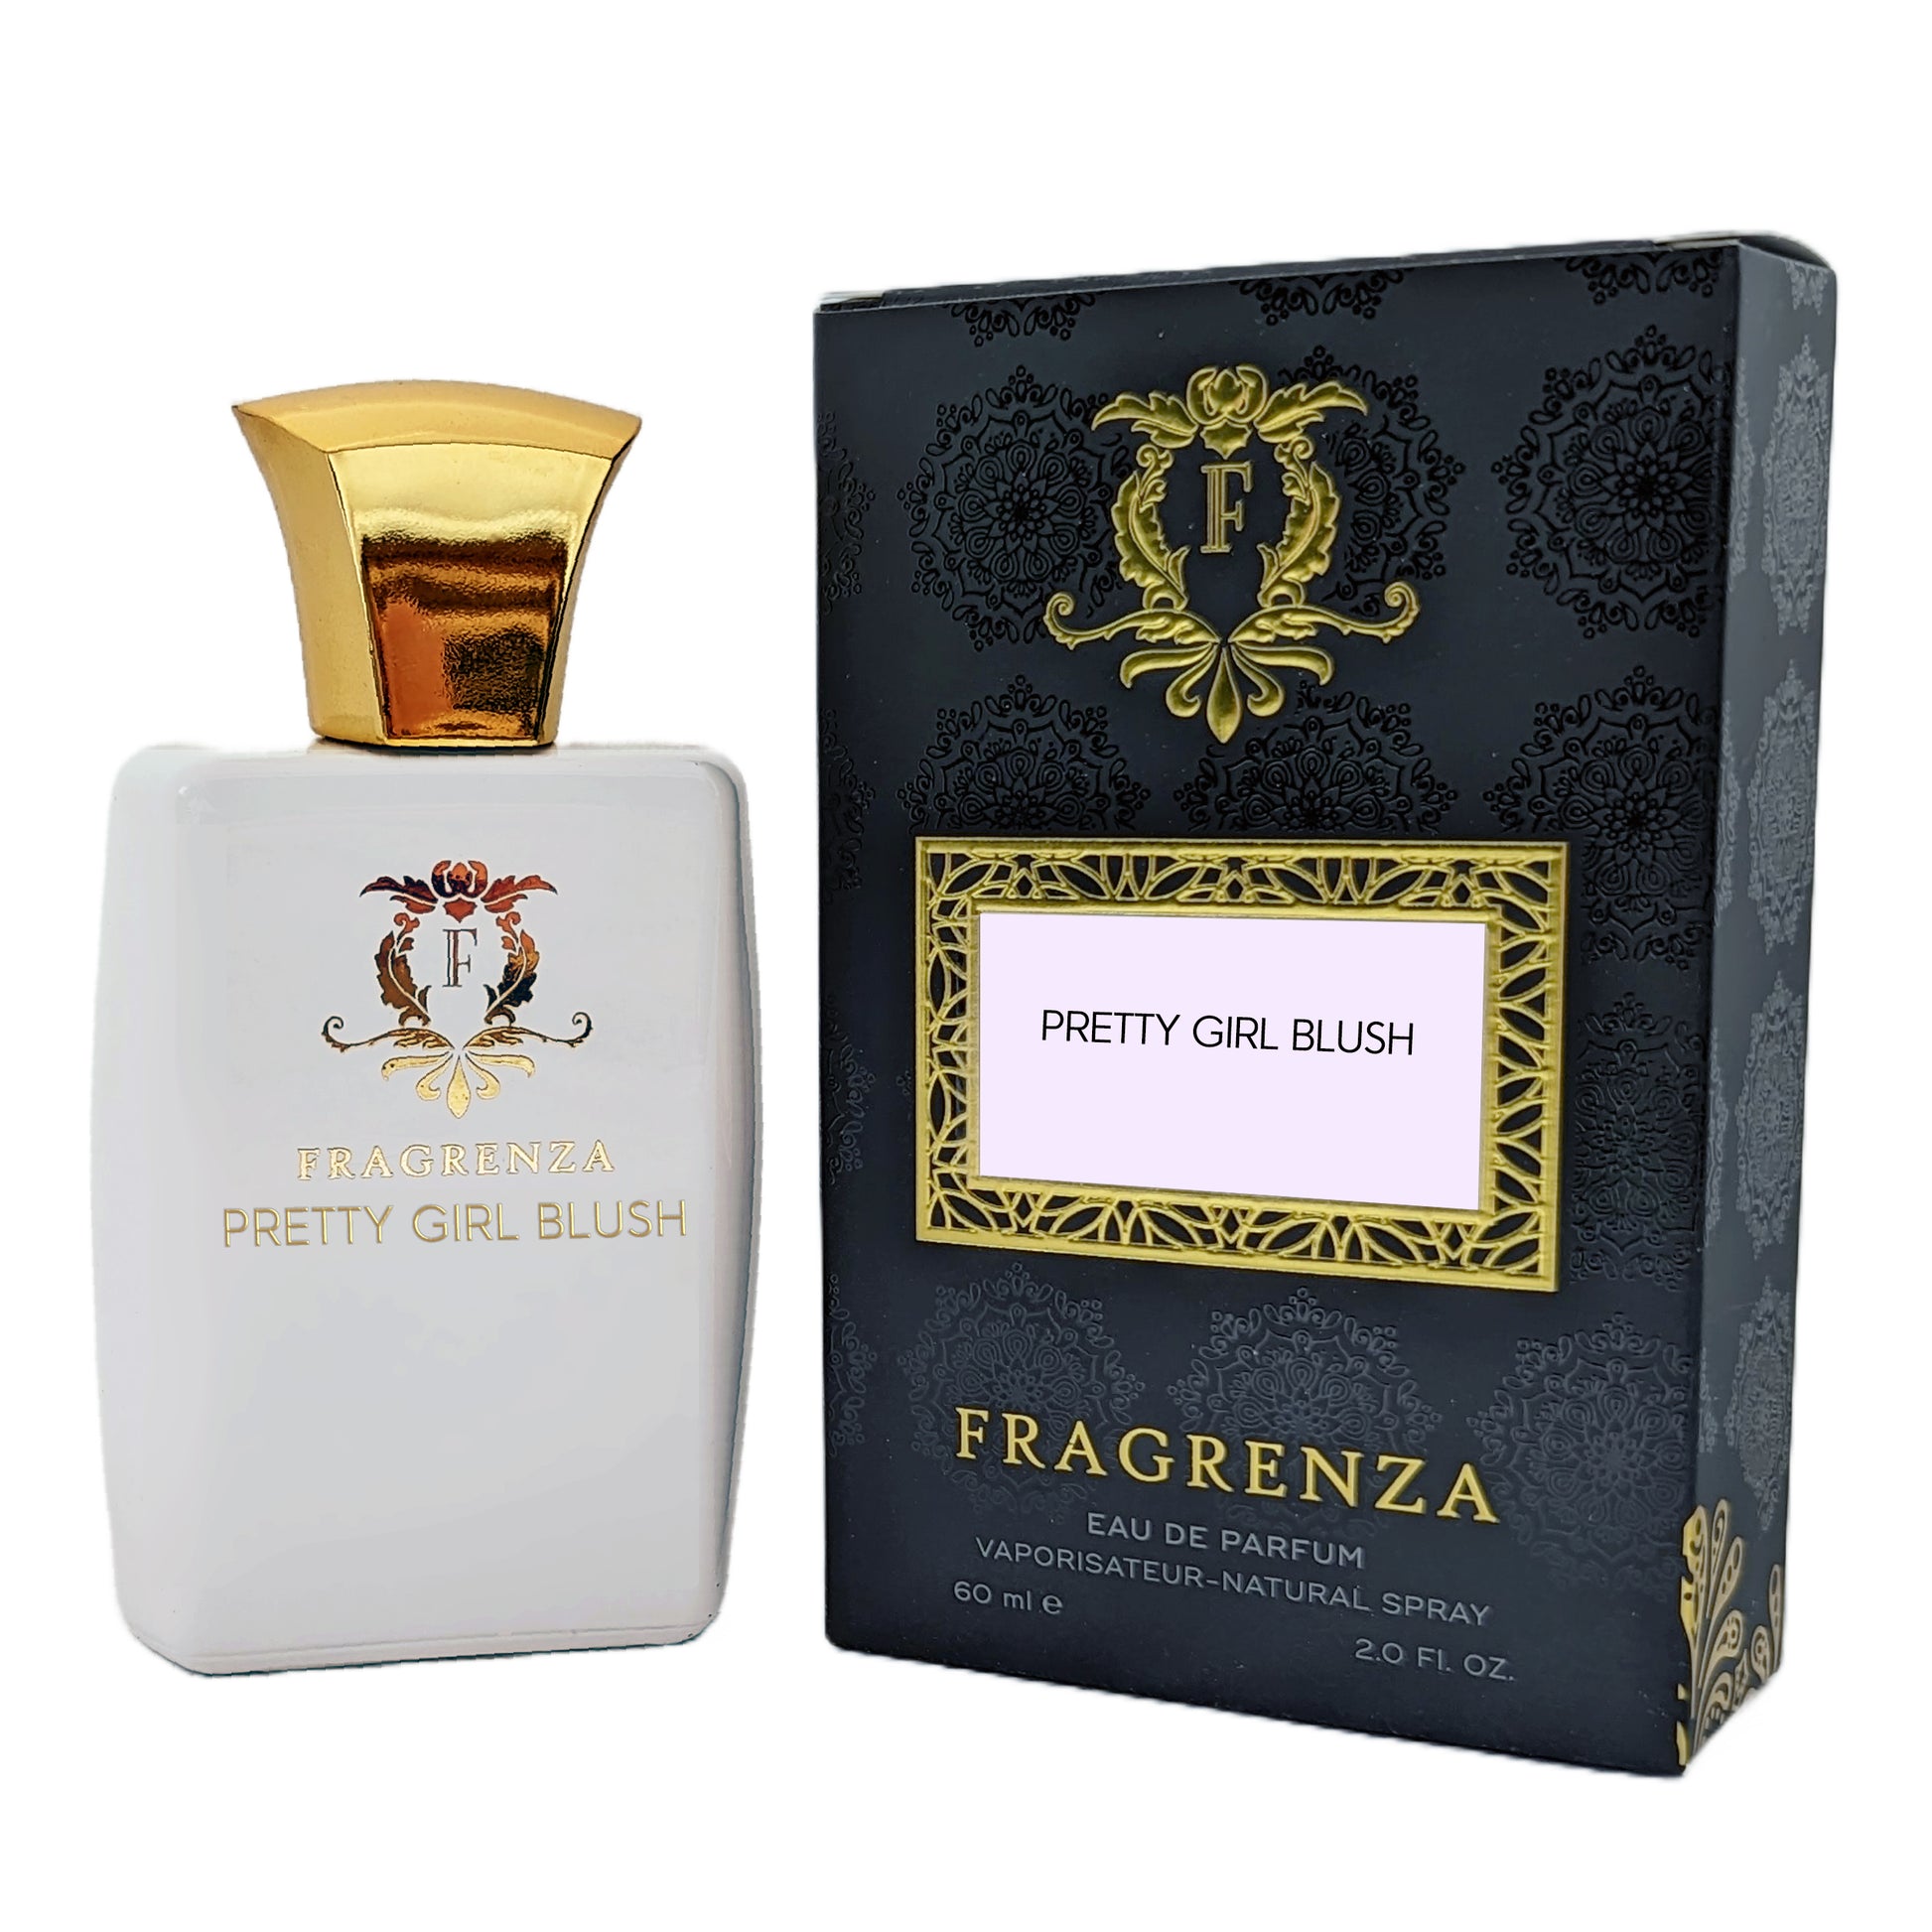 Carolina Herrera Good Girl Blush Inspired Luxe Perfume - Pretty